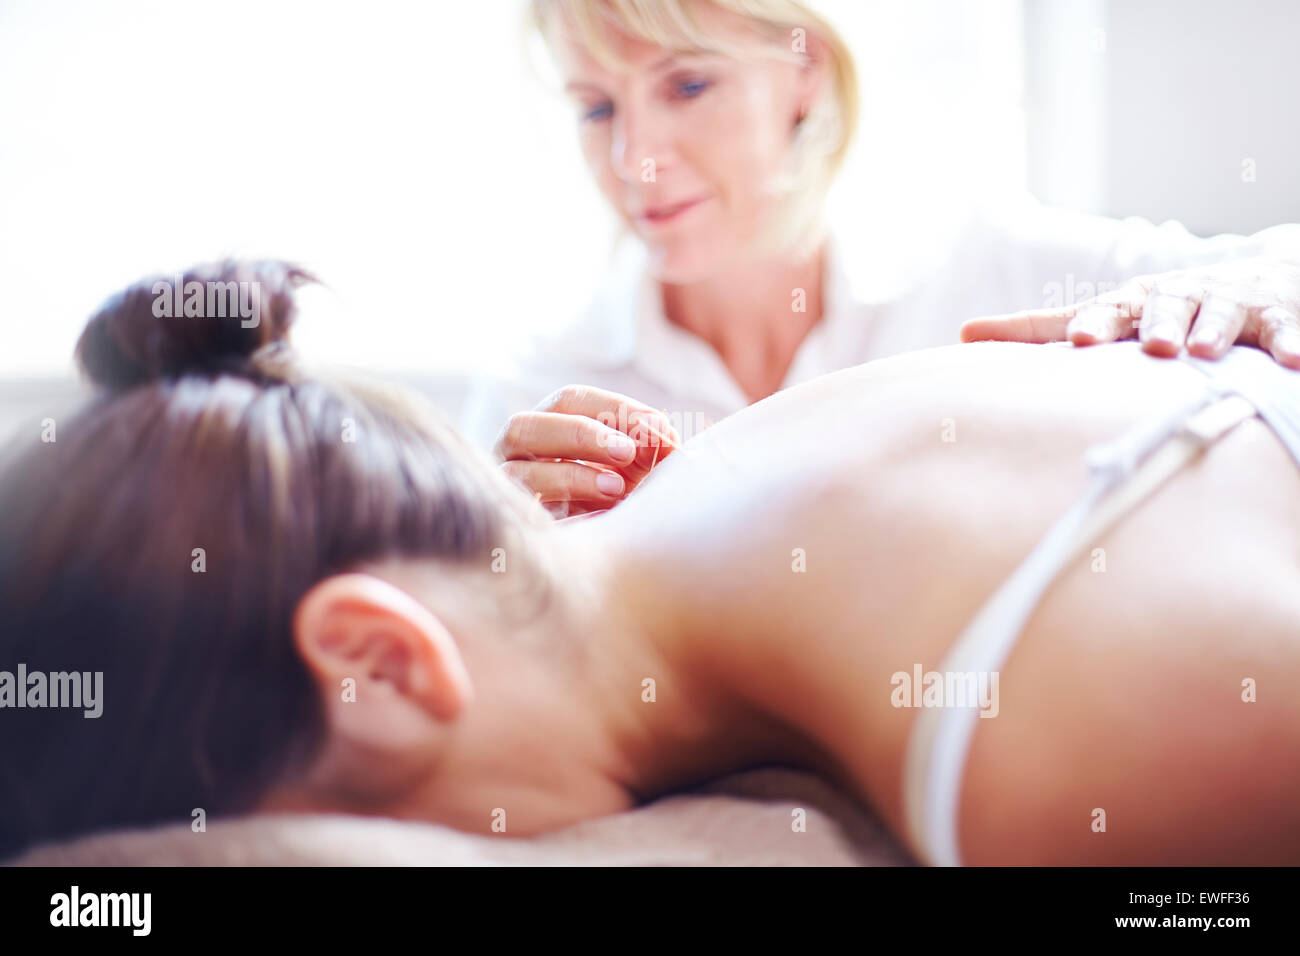 Aiguille d'acupuncture acupuncteur l'application to woman's neck Banque D'Images